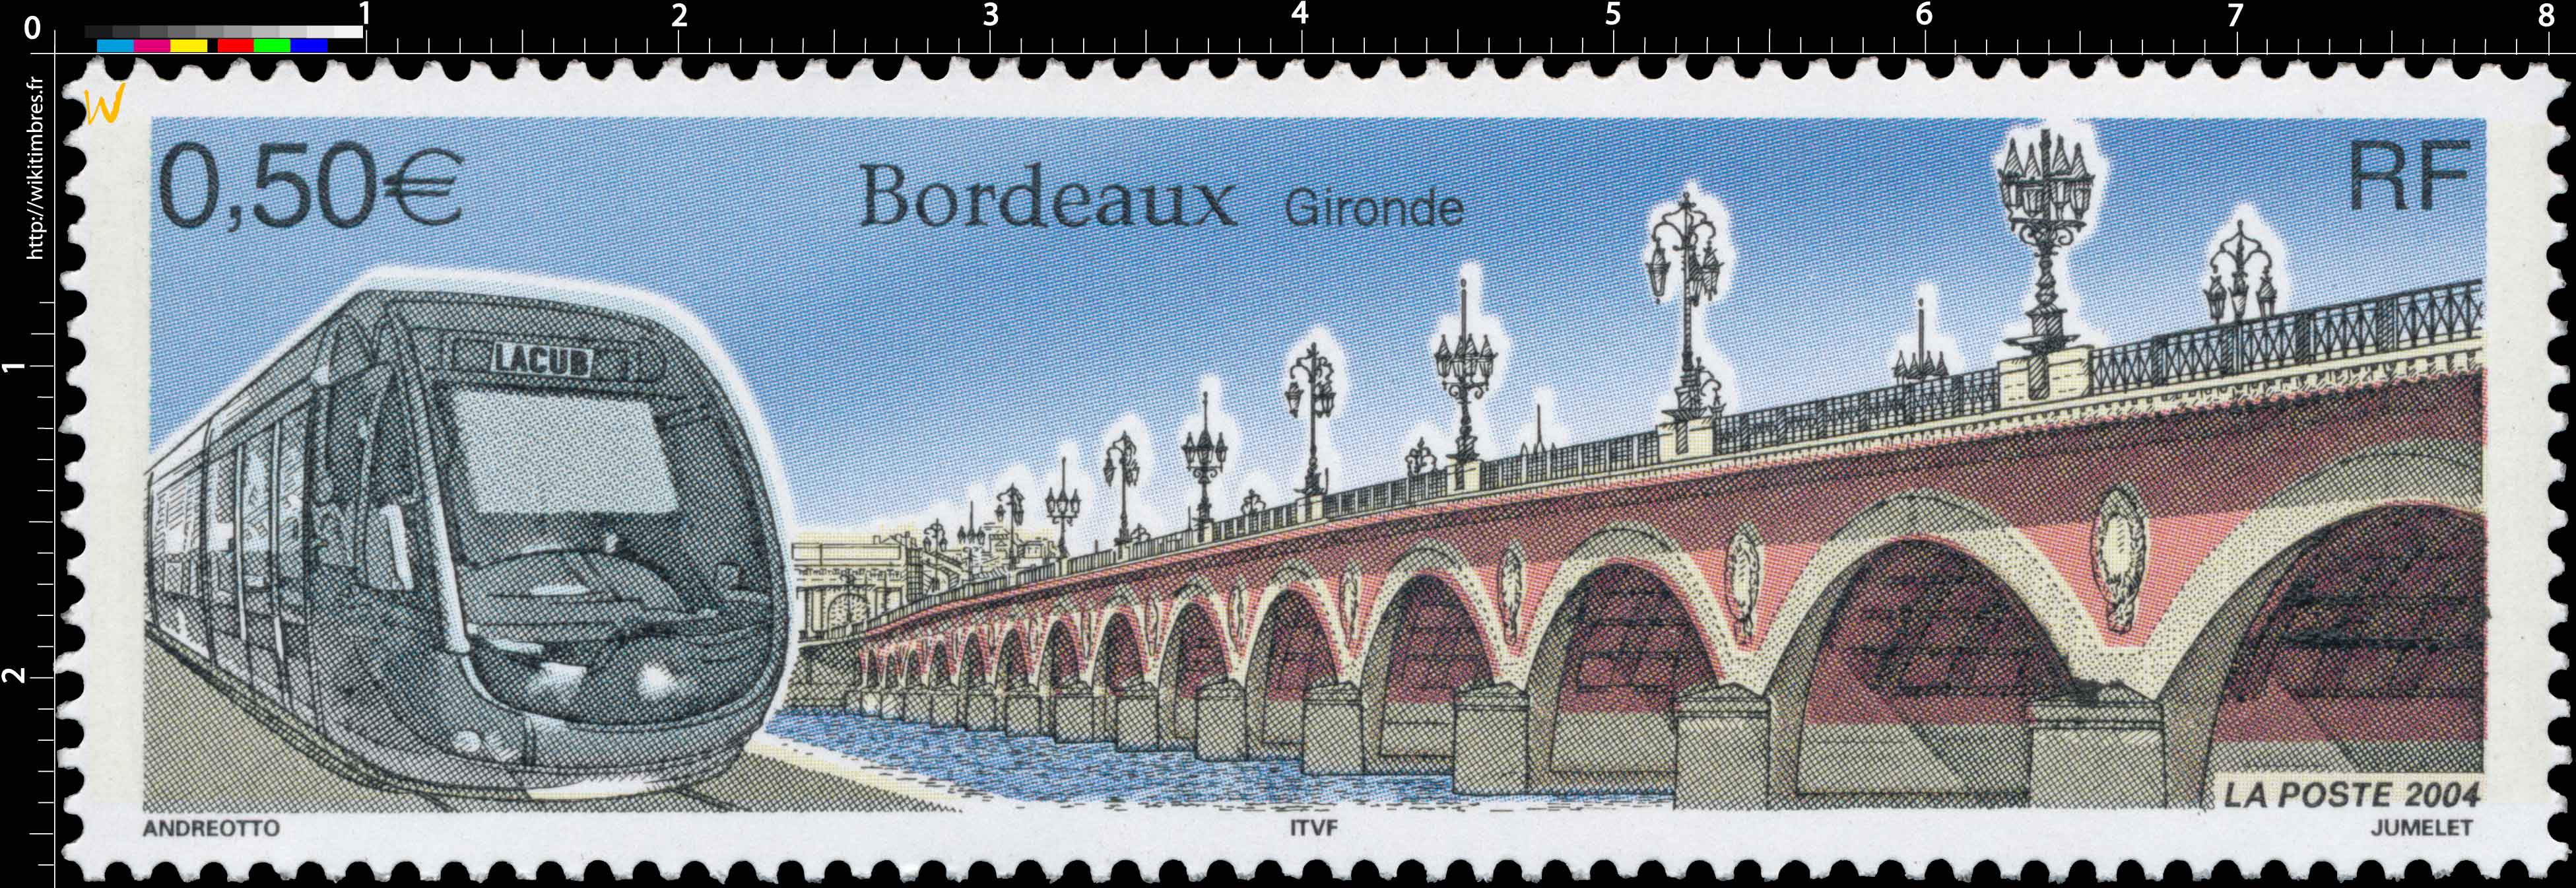 2004 Bordeaux Gironde